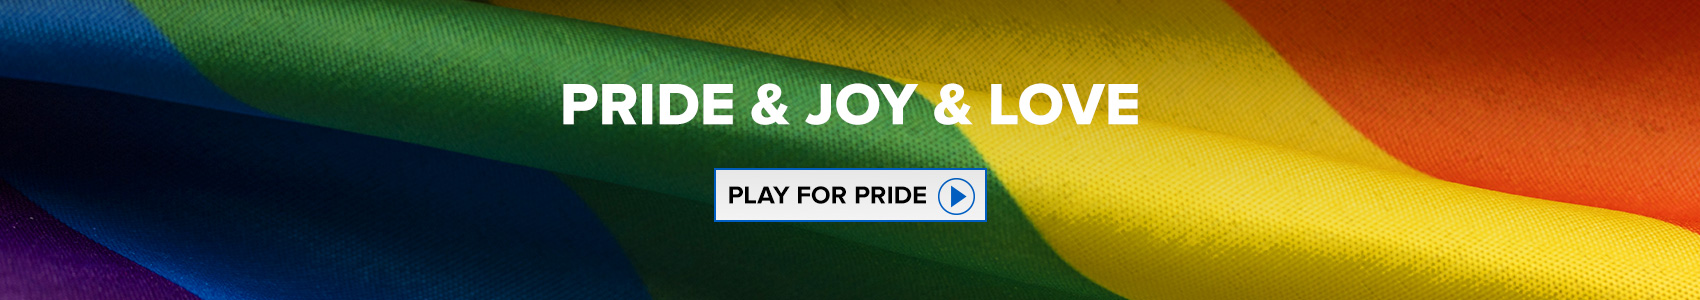 Banner-promo-Pride_V02.jpg